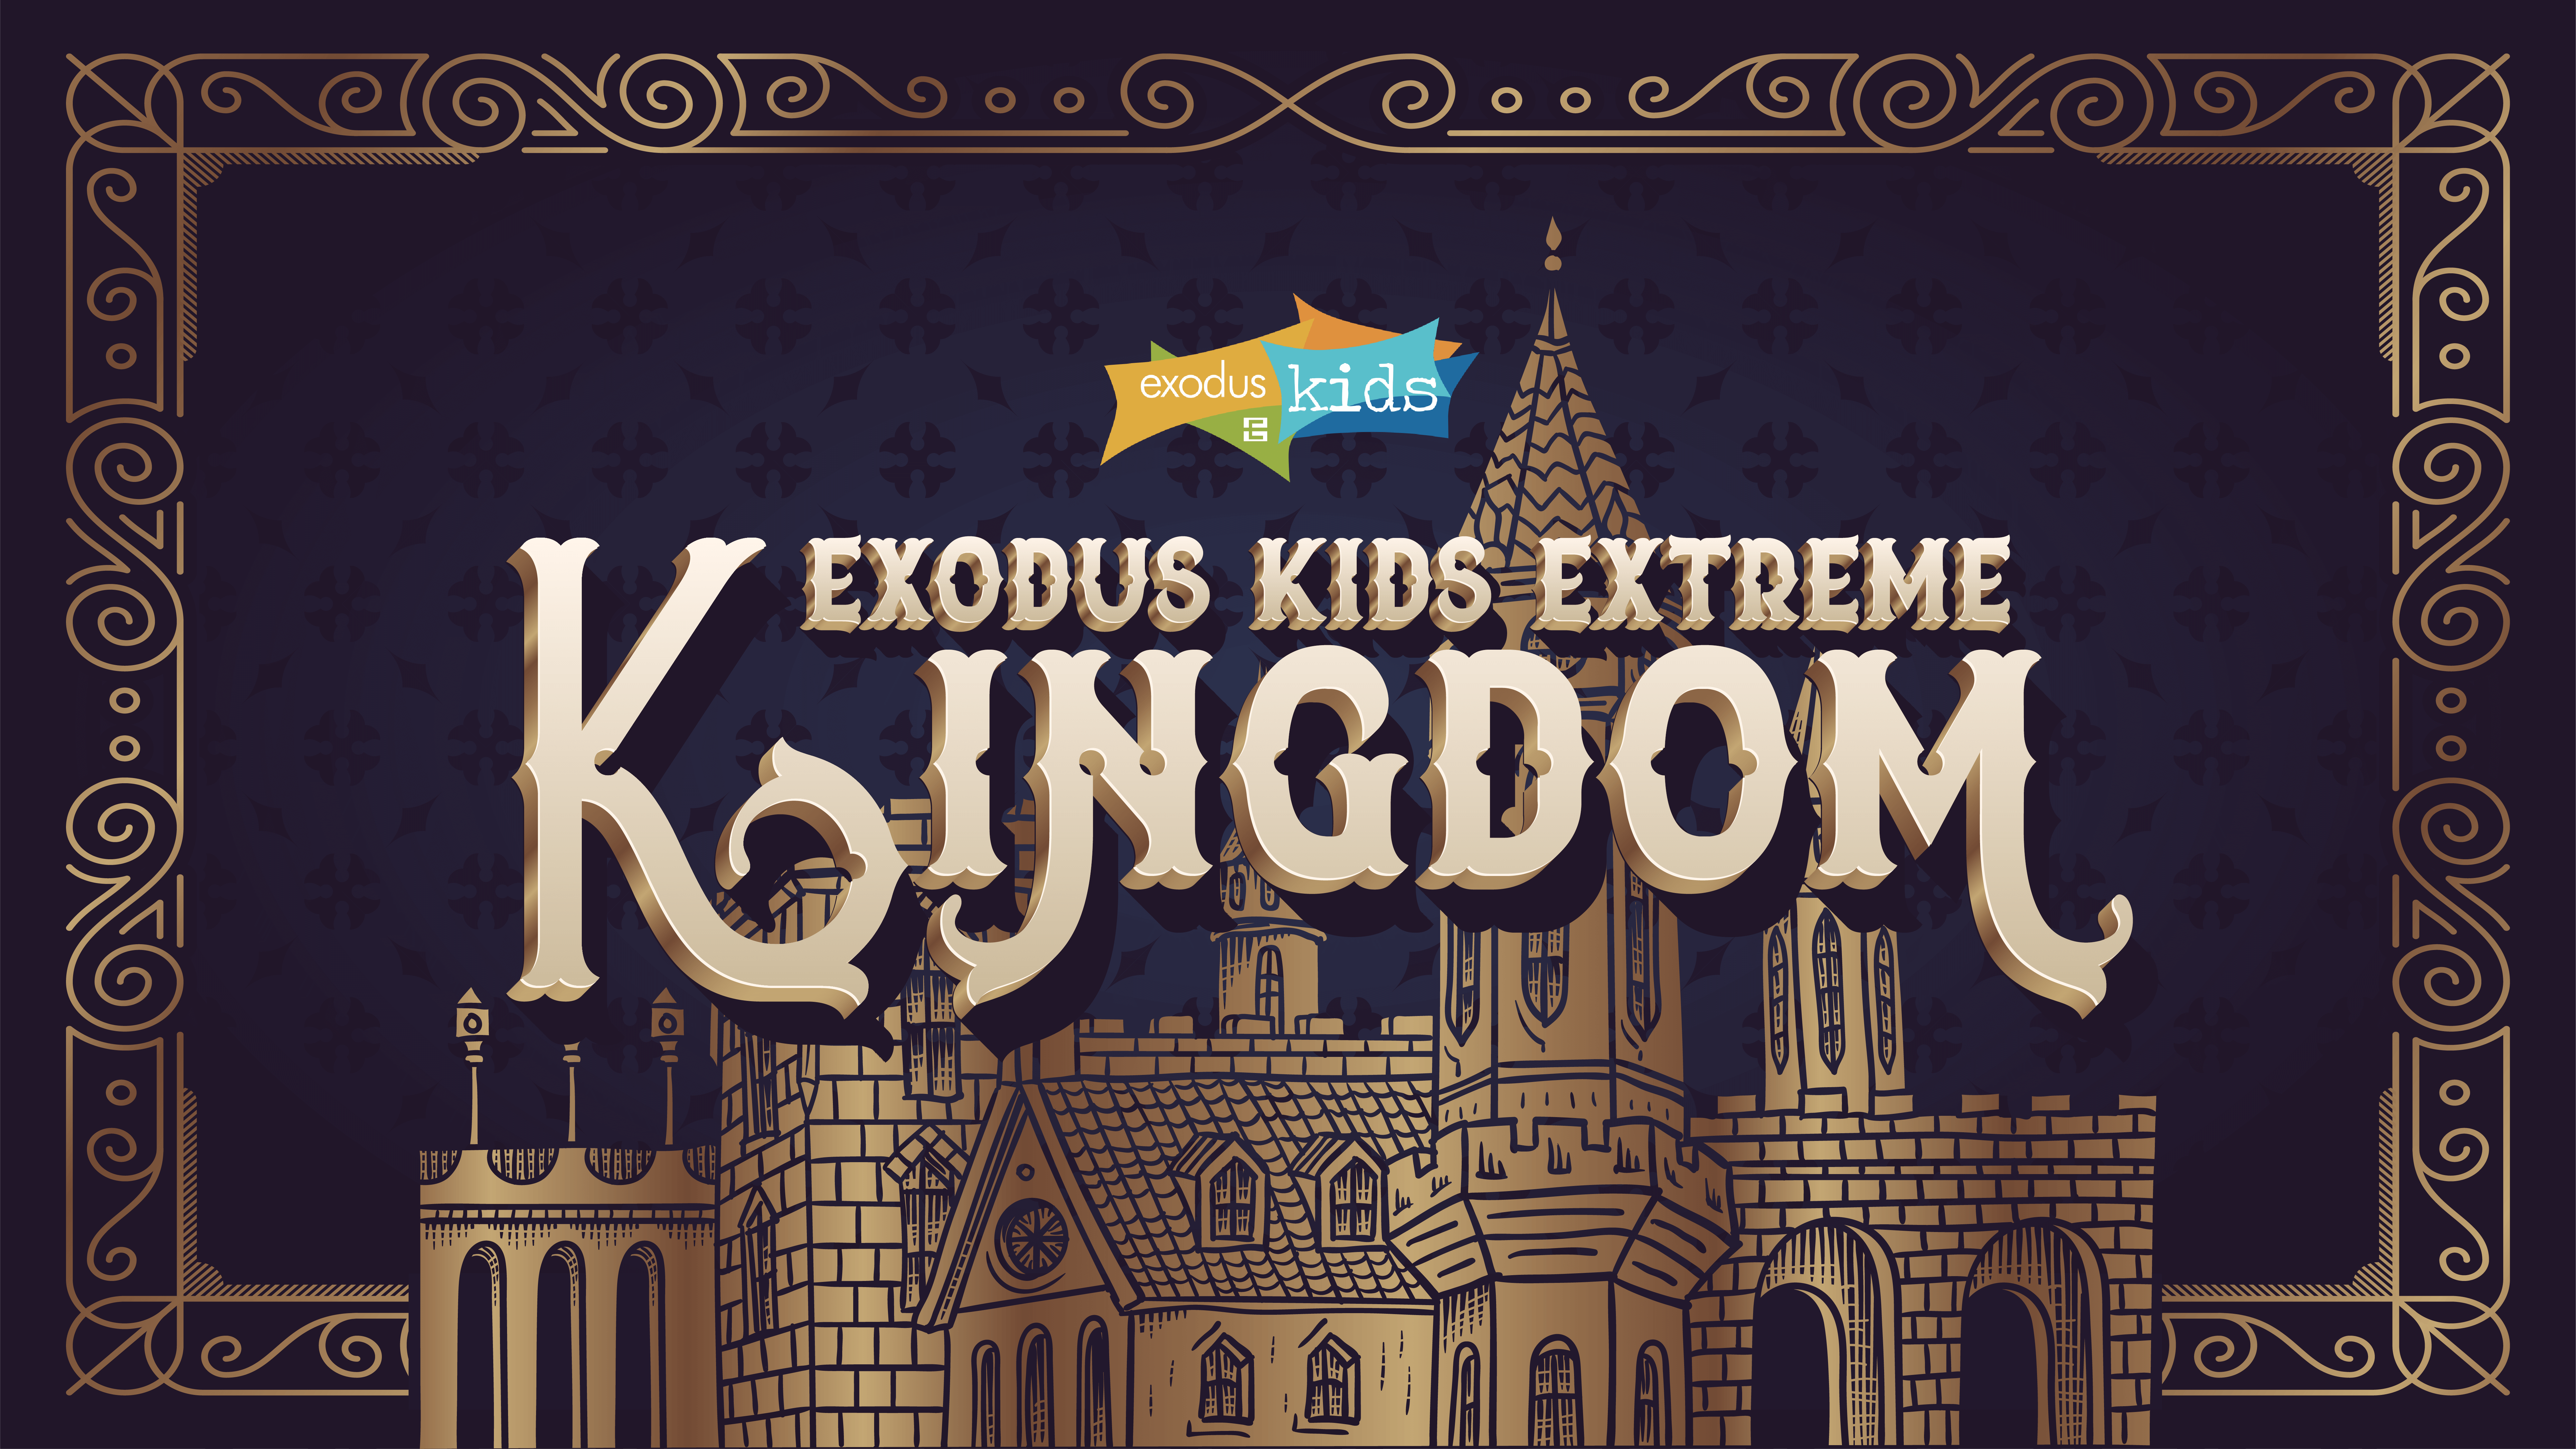 Exodus Kids Extreme 2019